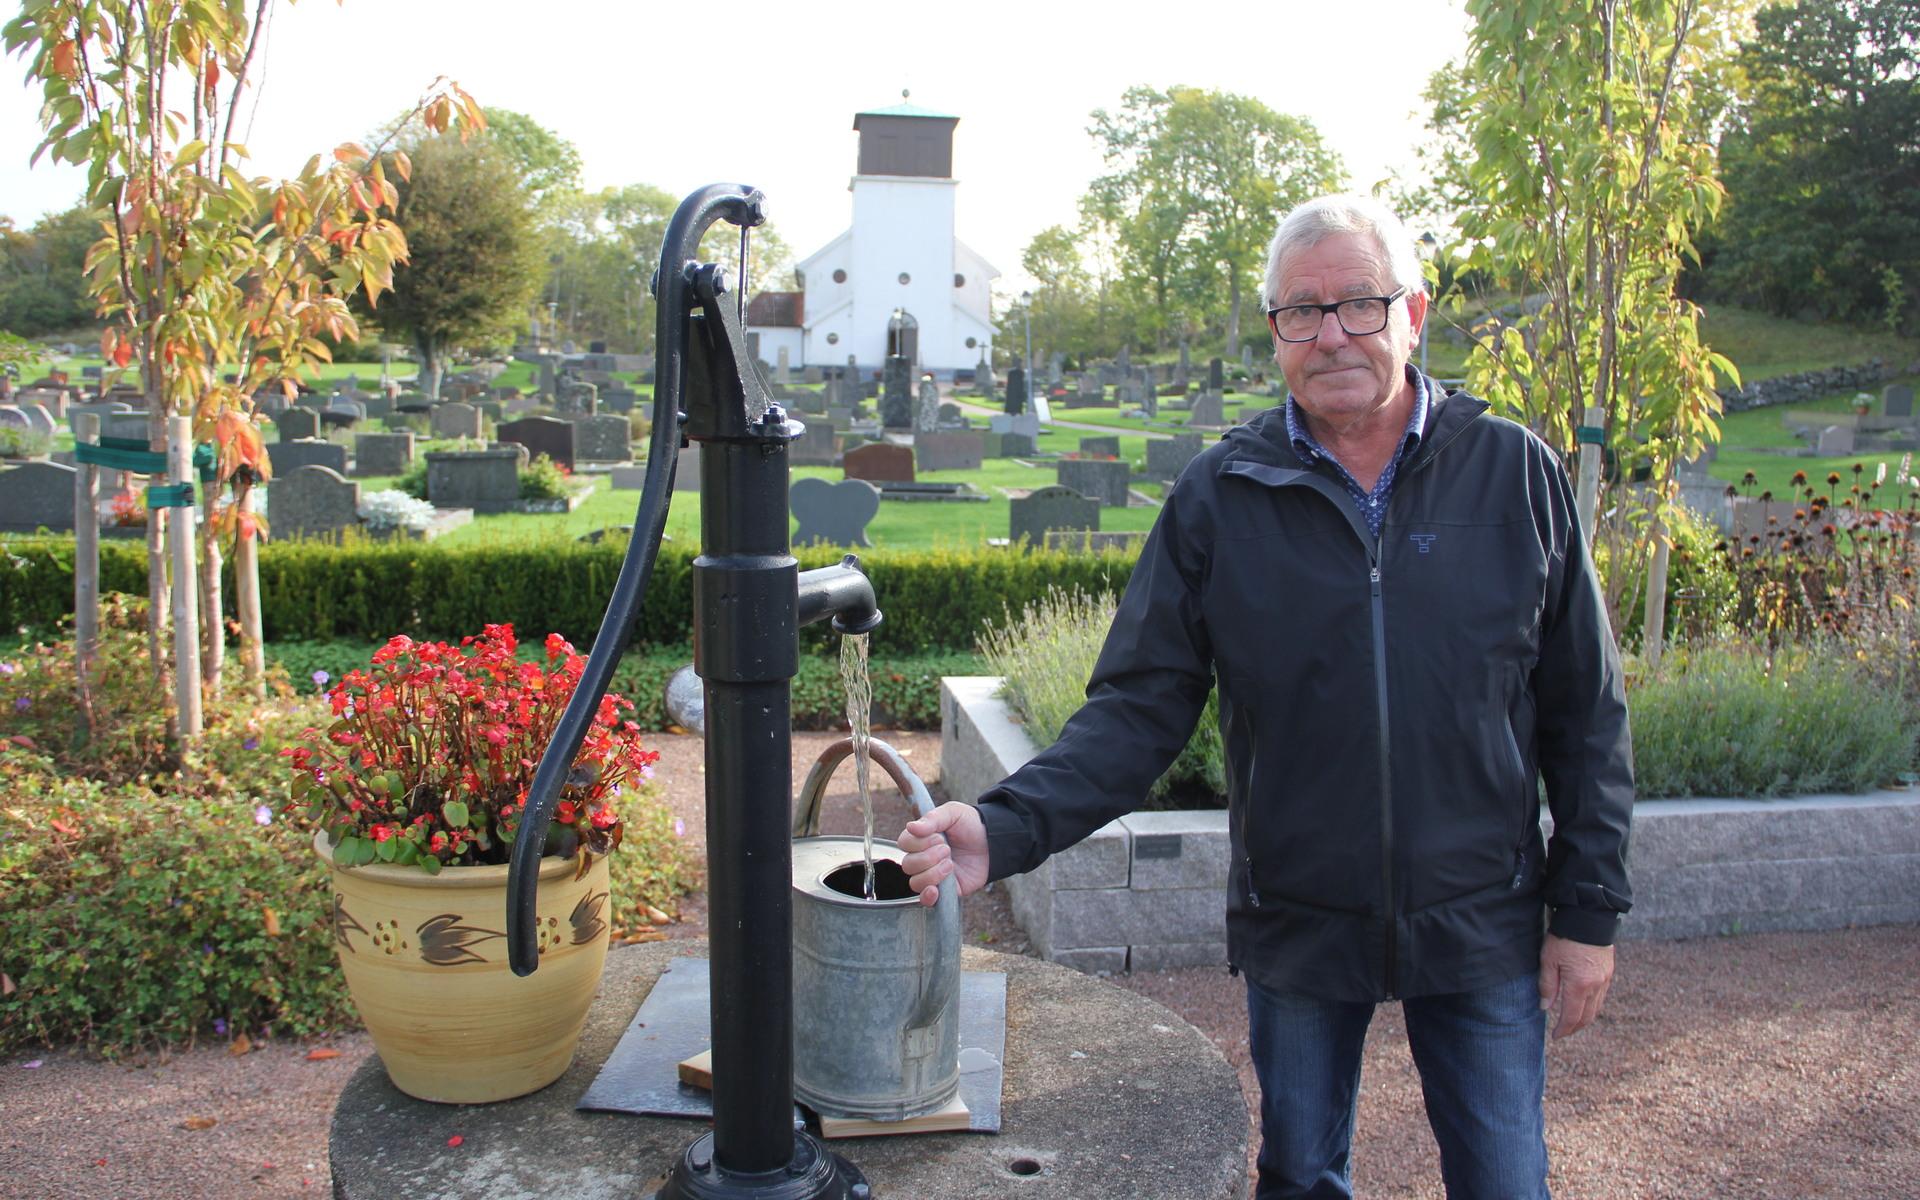 Ove Berntsson sköter om kyrkogården och vet mycket om allt som finns där.